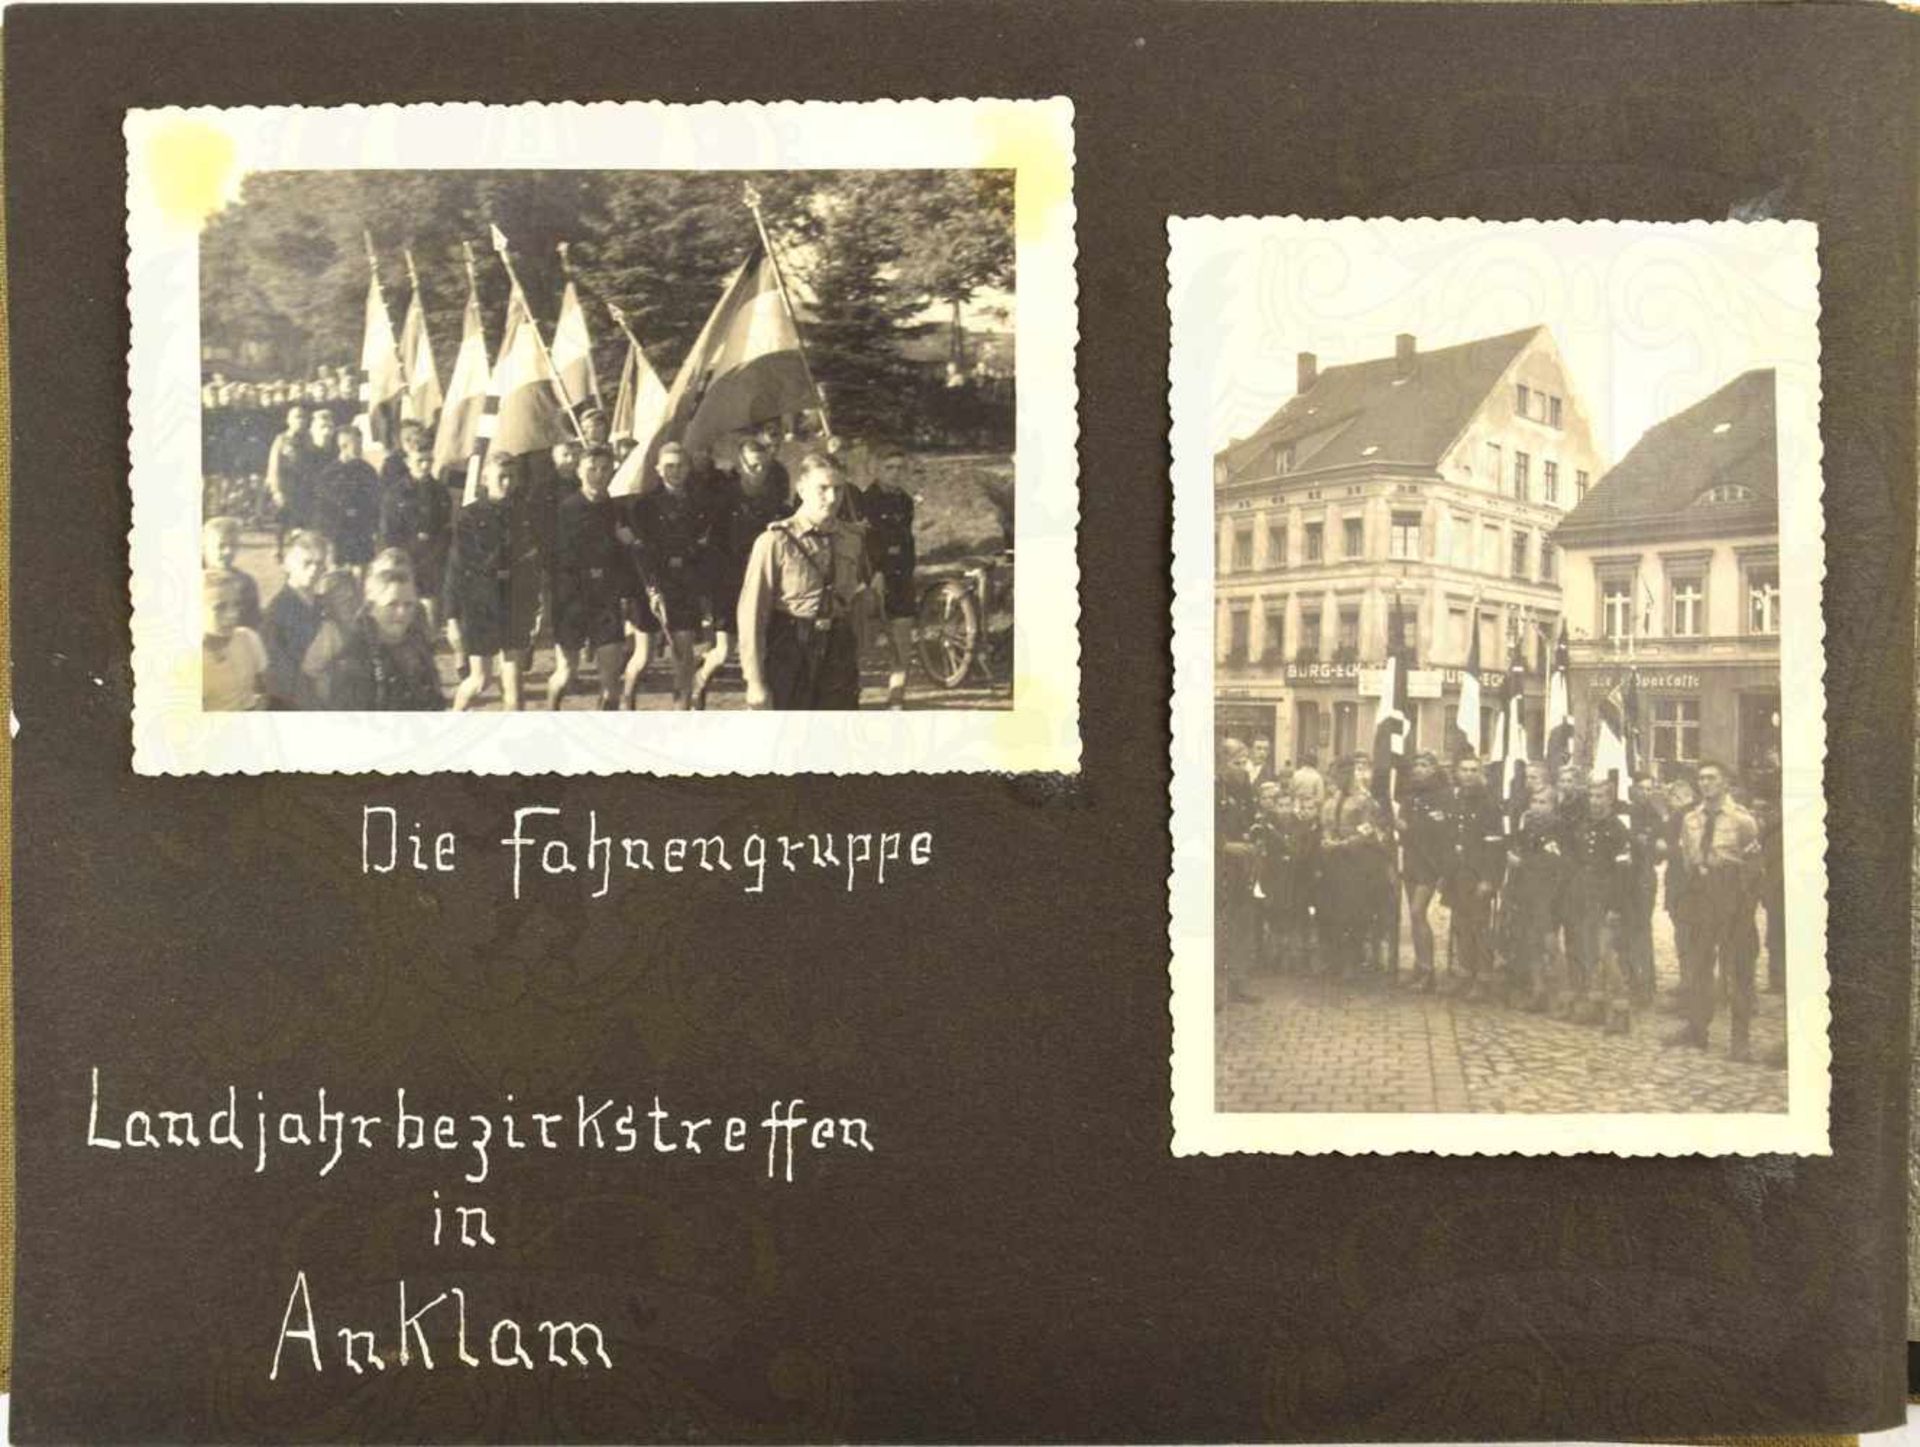 FOTOALBUM LANDJAHR LUBMIN 1937, m. 73 Fotos, Ärmeldreieck Landjahr u. Ausweis Hitlerjunge aus - Bild 2 aus 2